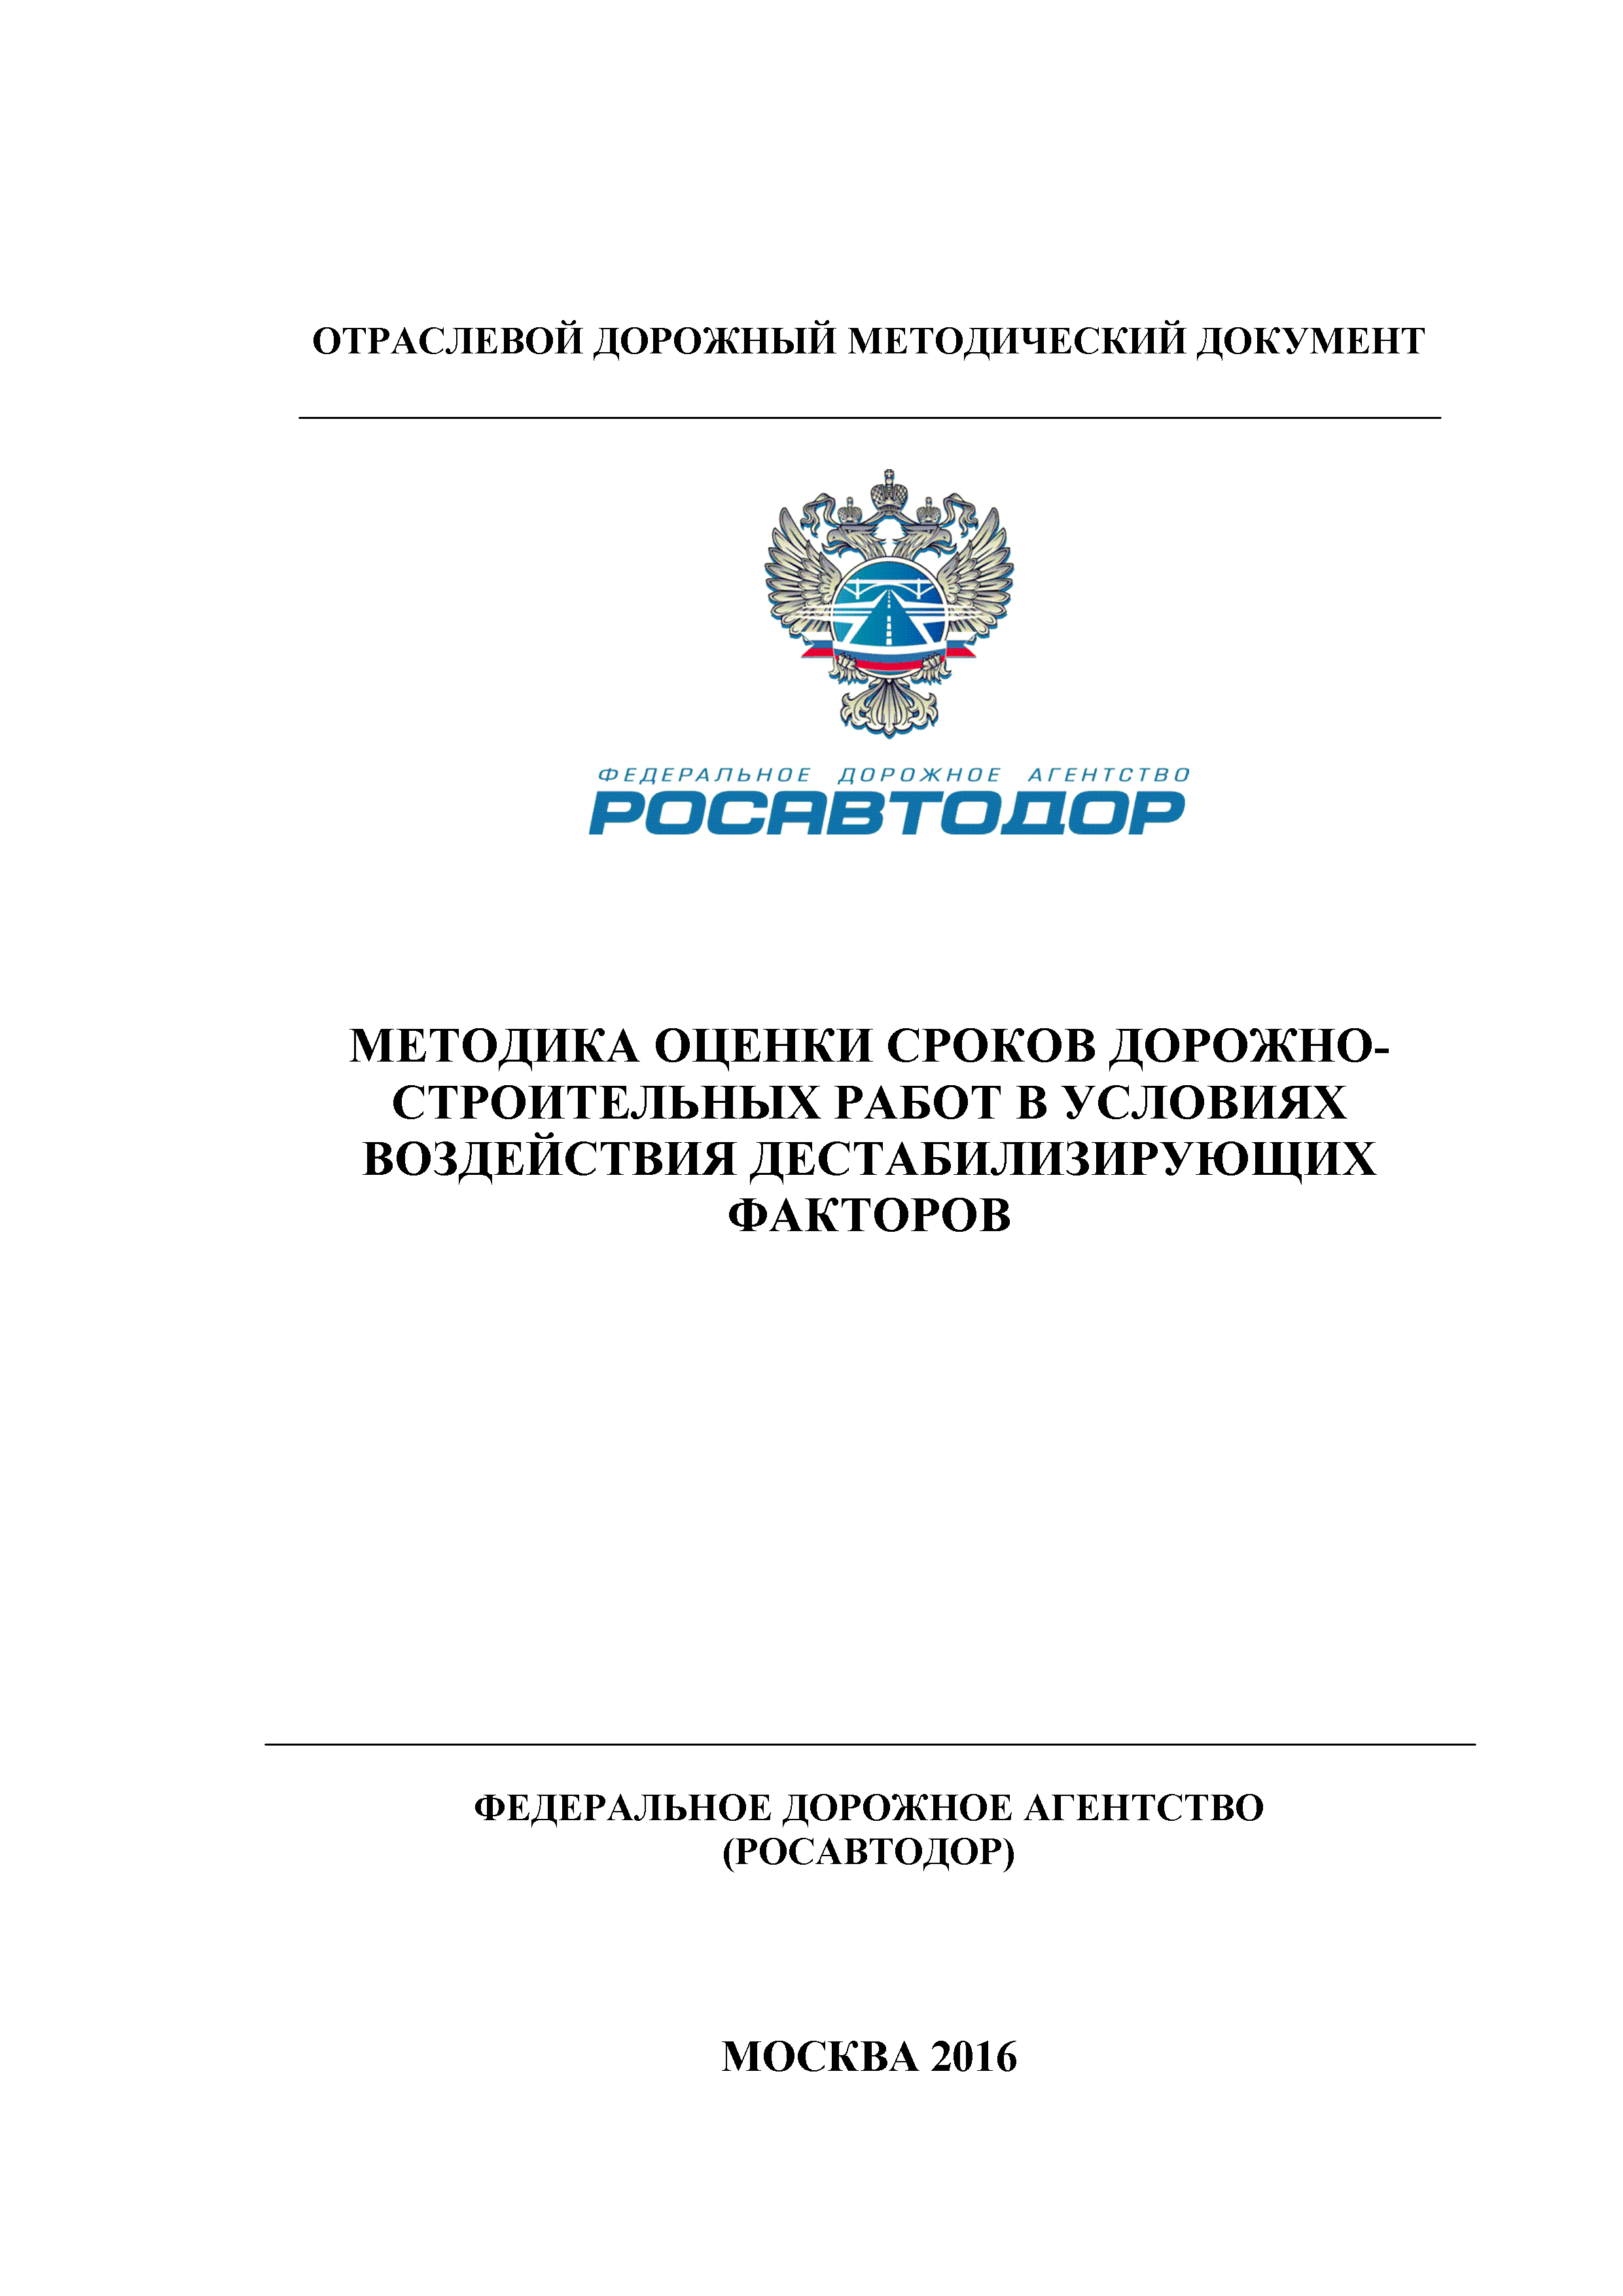 ОДМ 218.4.024-2016